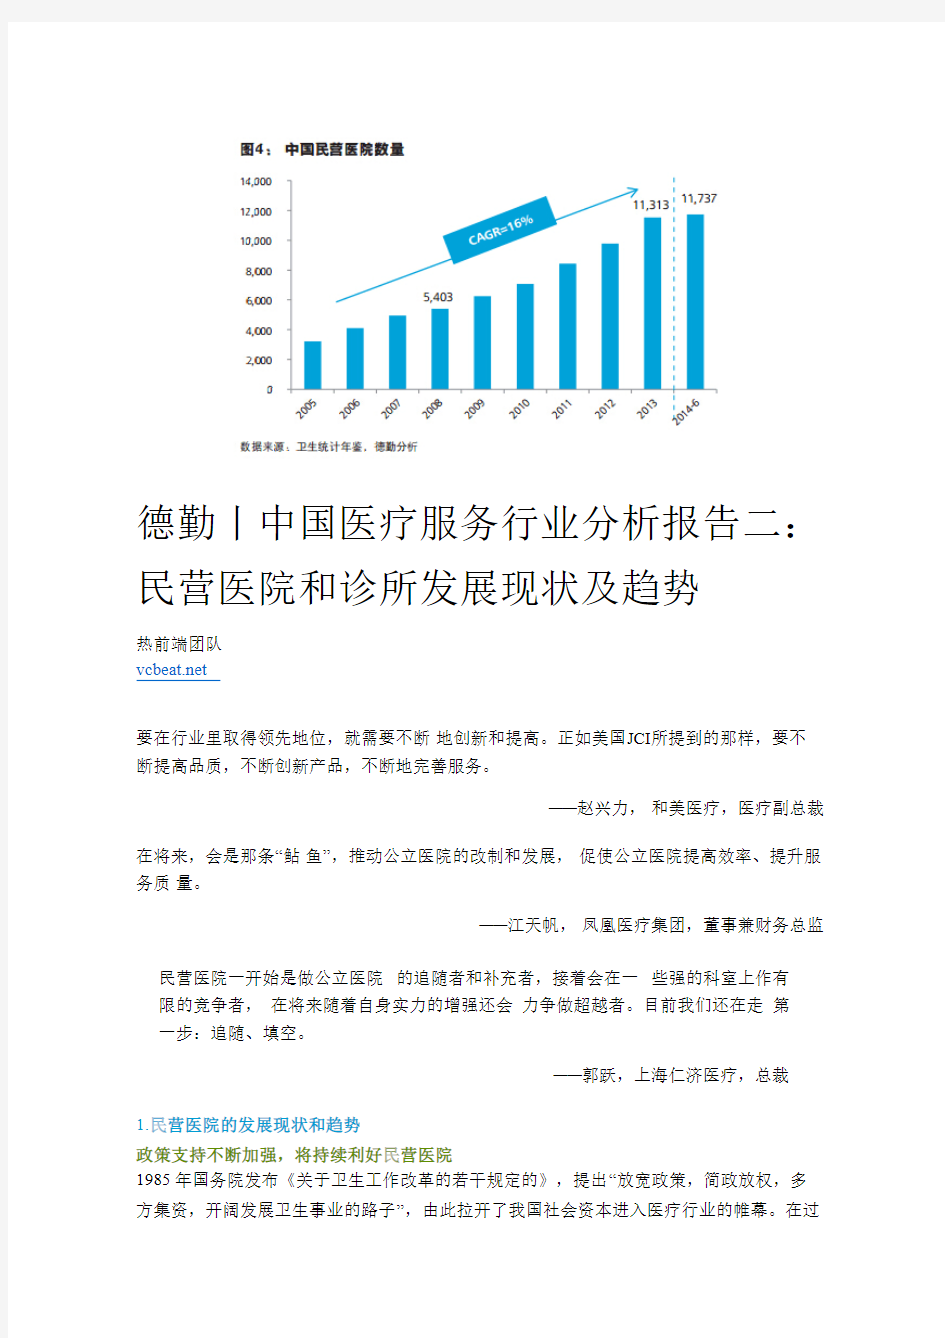 德勤丨中国医疗服务行业分析报告二 民营医院和诊所发展现状及趋势